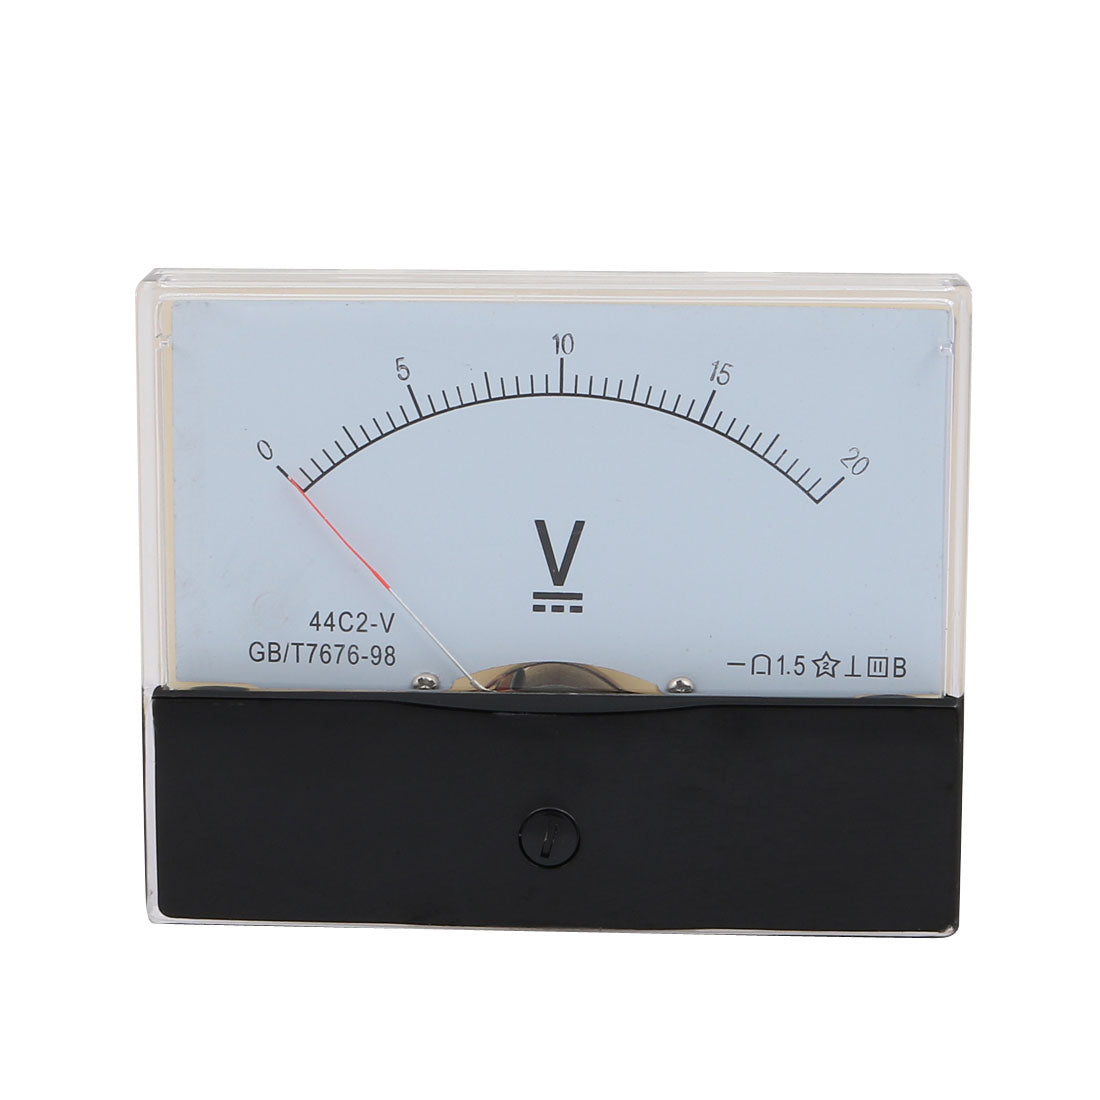 uxcell Uxcell Rectangle Measurement Tool Analog Panel Voltmeter Volt Meter DC 0 - 20V Measuring Range 44C2